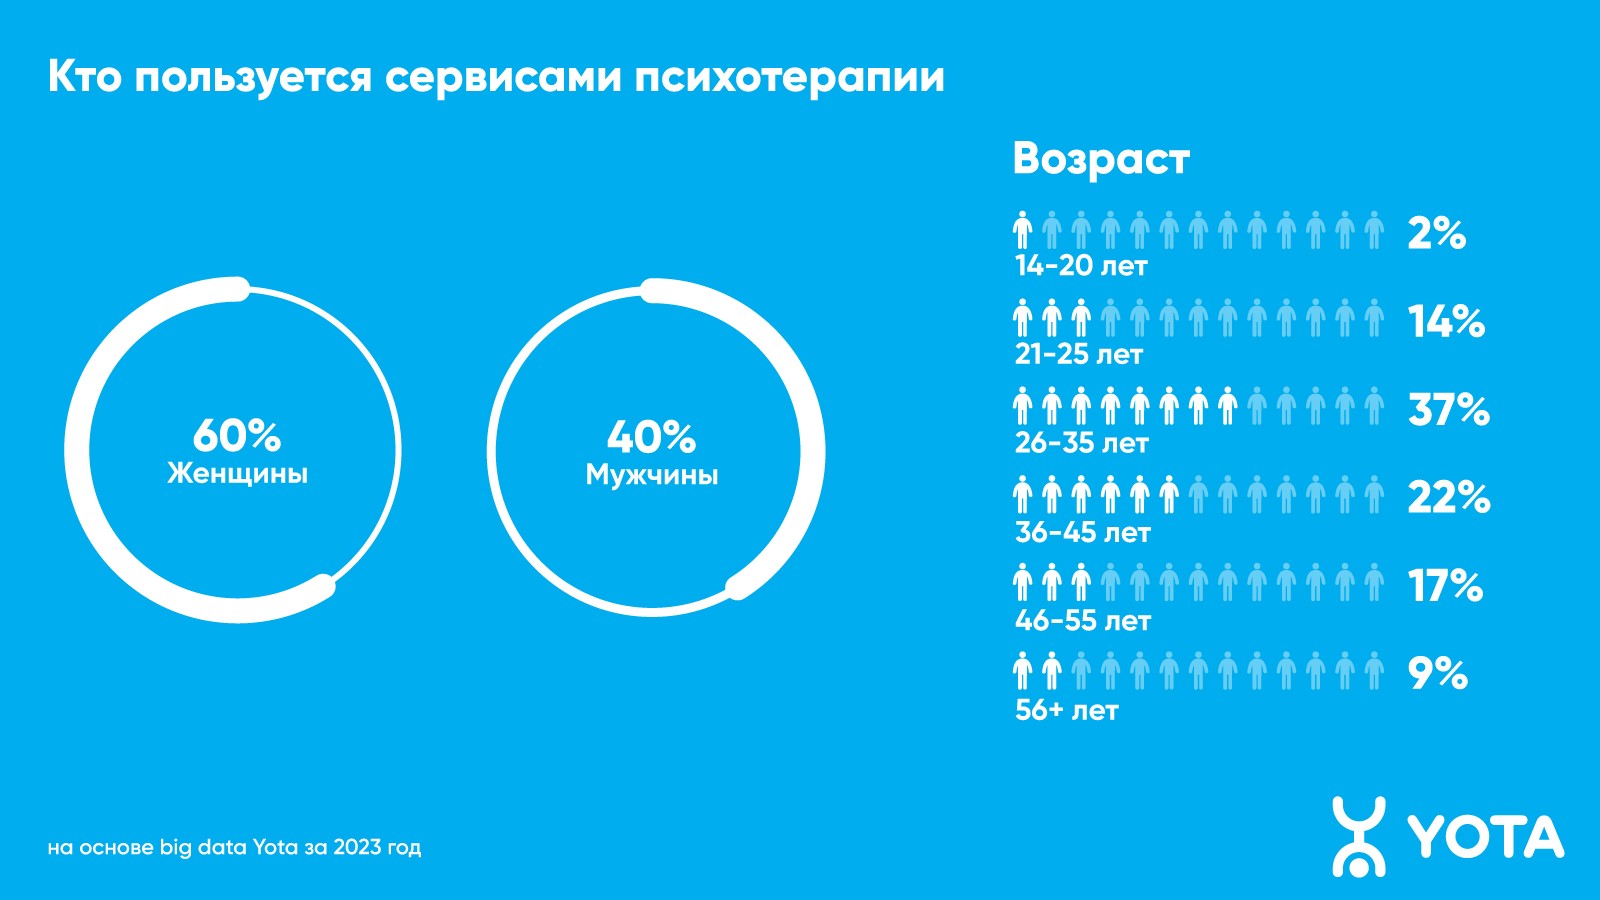 60% пользователей психологических сервисов в Перми — женщины